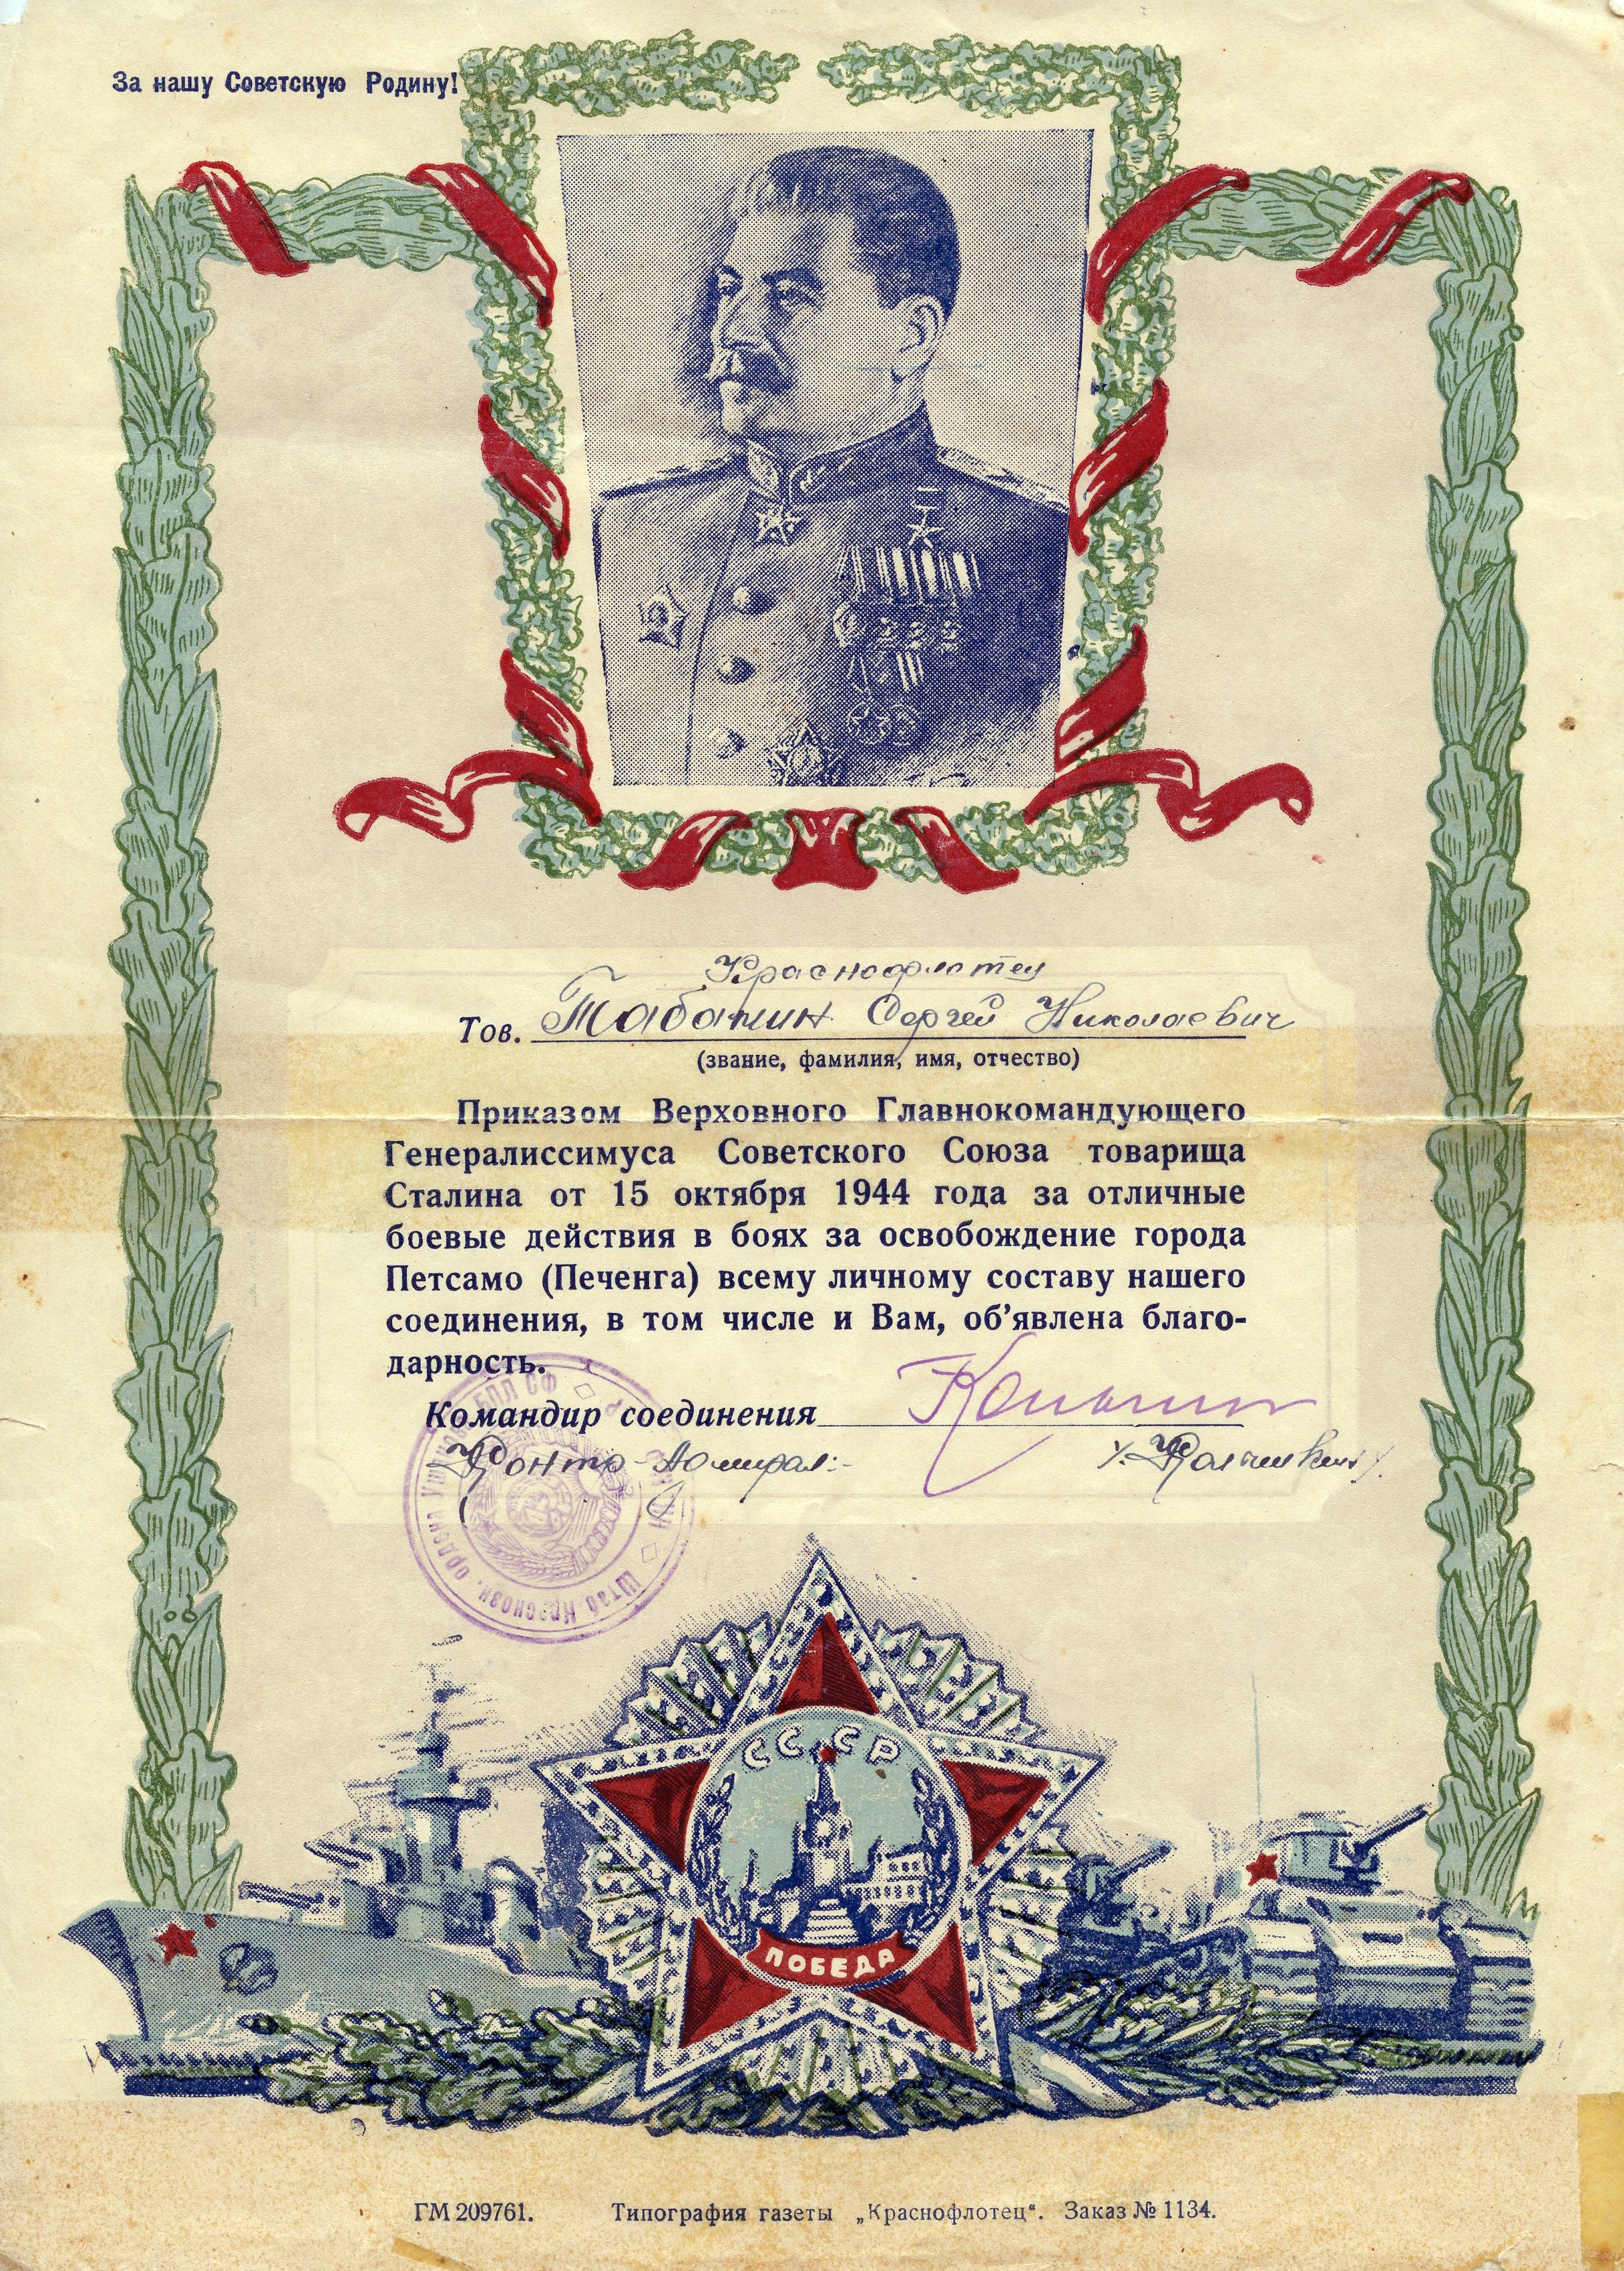 Благодарность от И. В. Сталина за участие в Петсамо-
Киркенесской операции